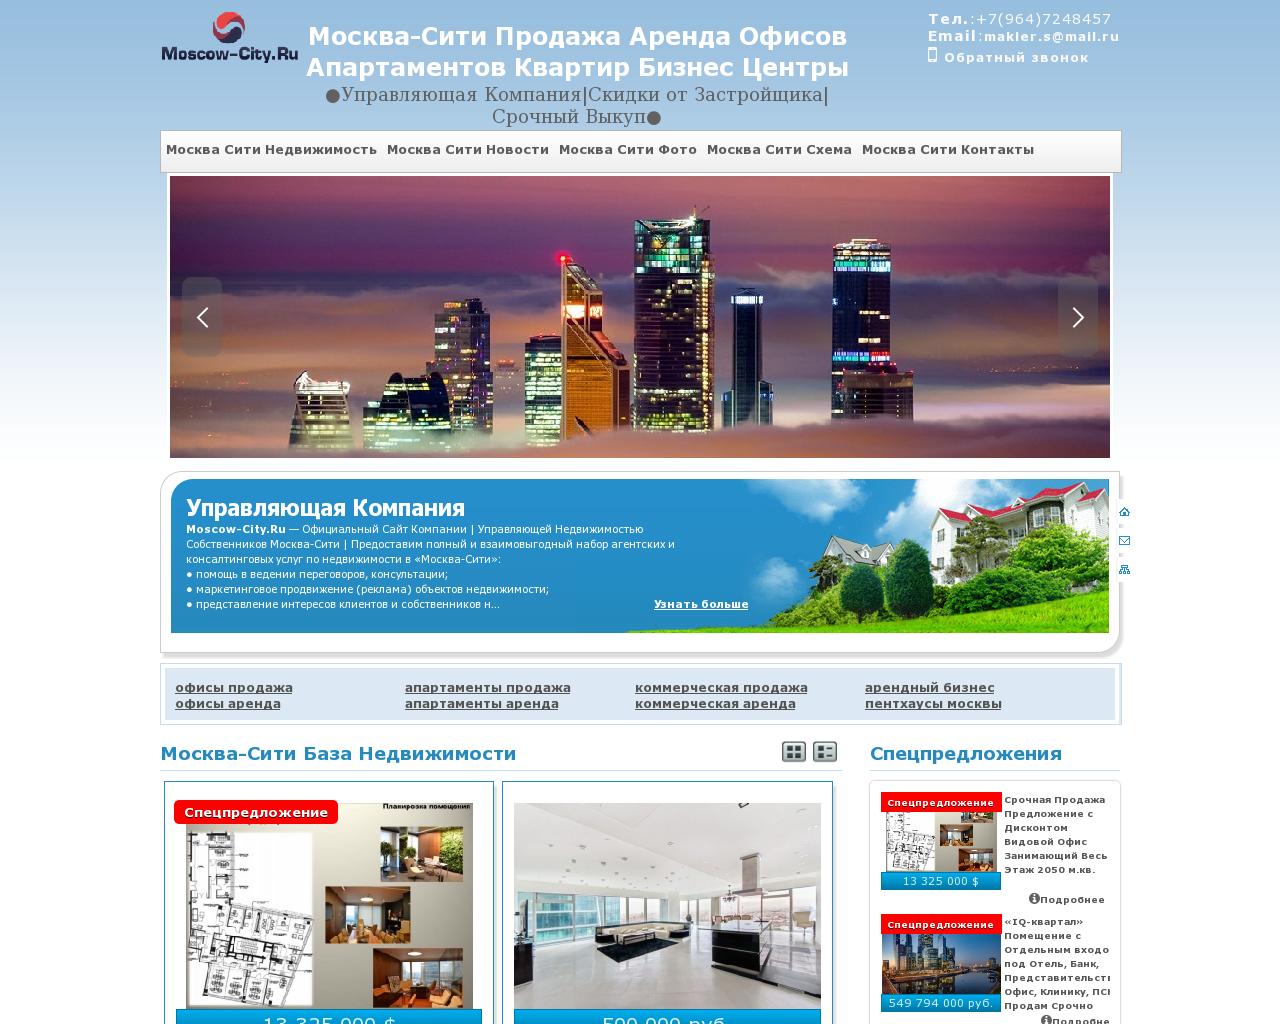 Изображение сайта москва-сити-аренда-продажа-апартаменты-офисы.рф в разрешении 1280x1024